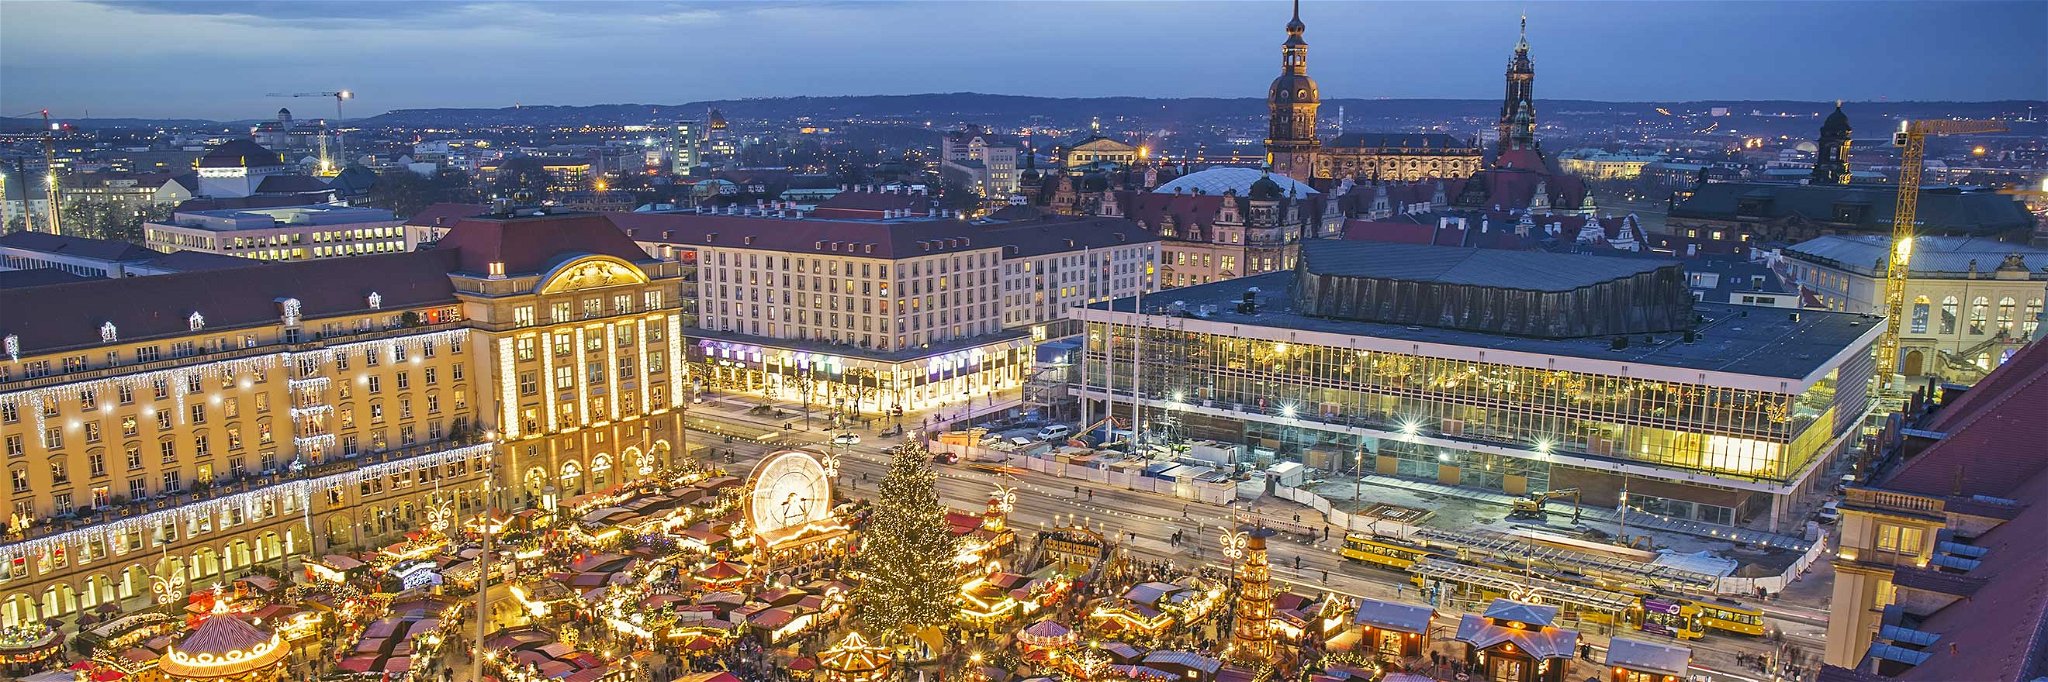 Der Striezelmarkt in Dresden.